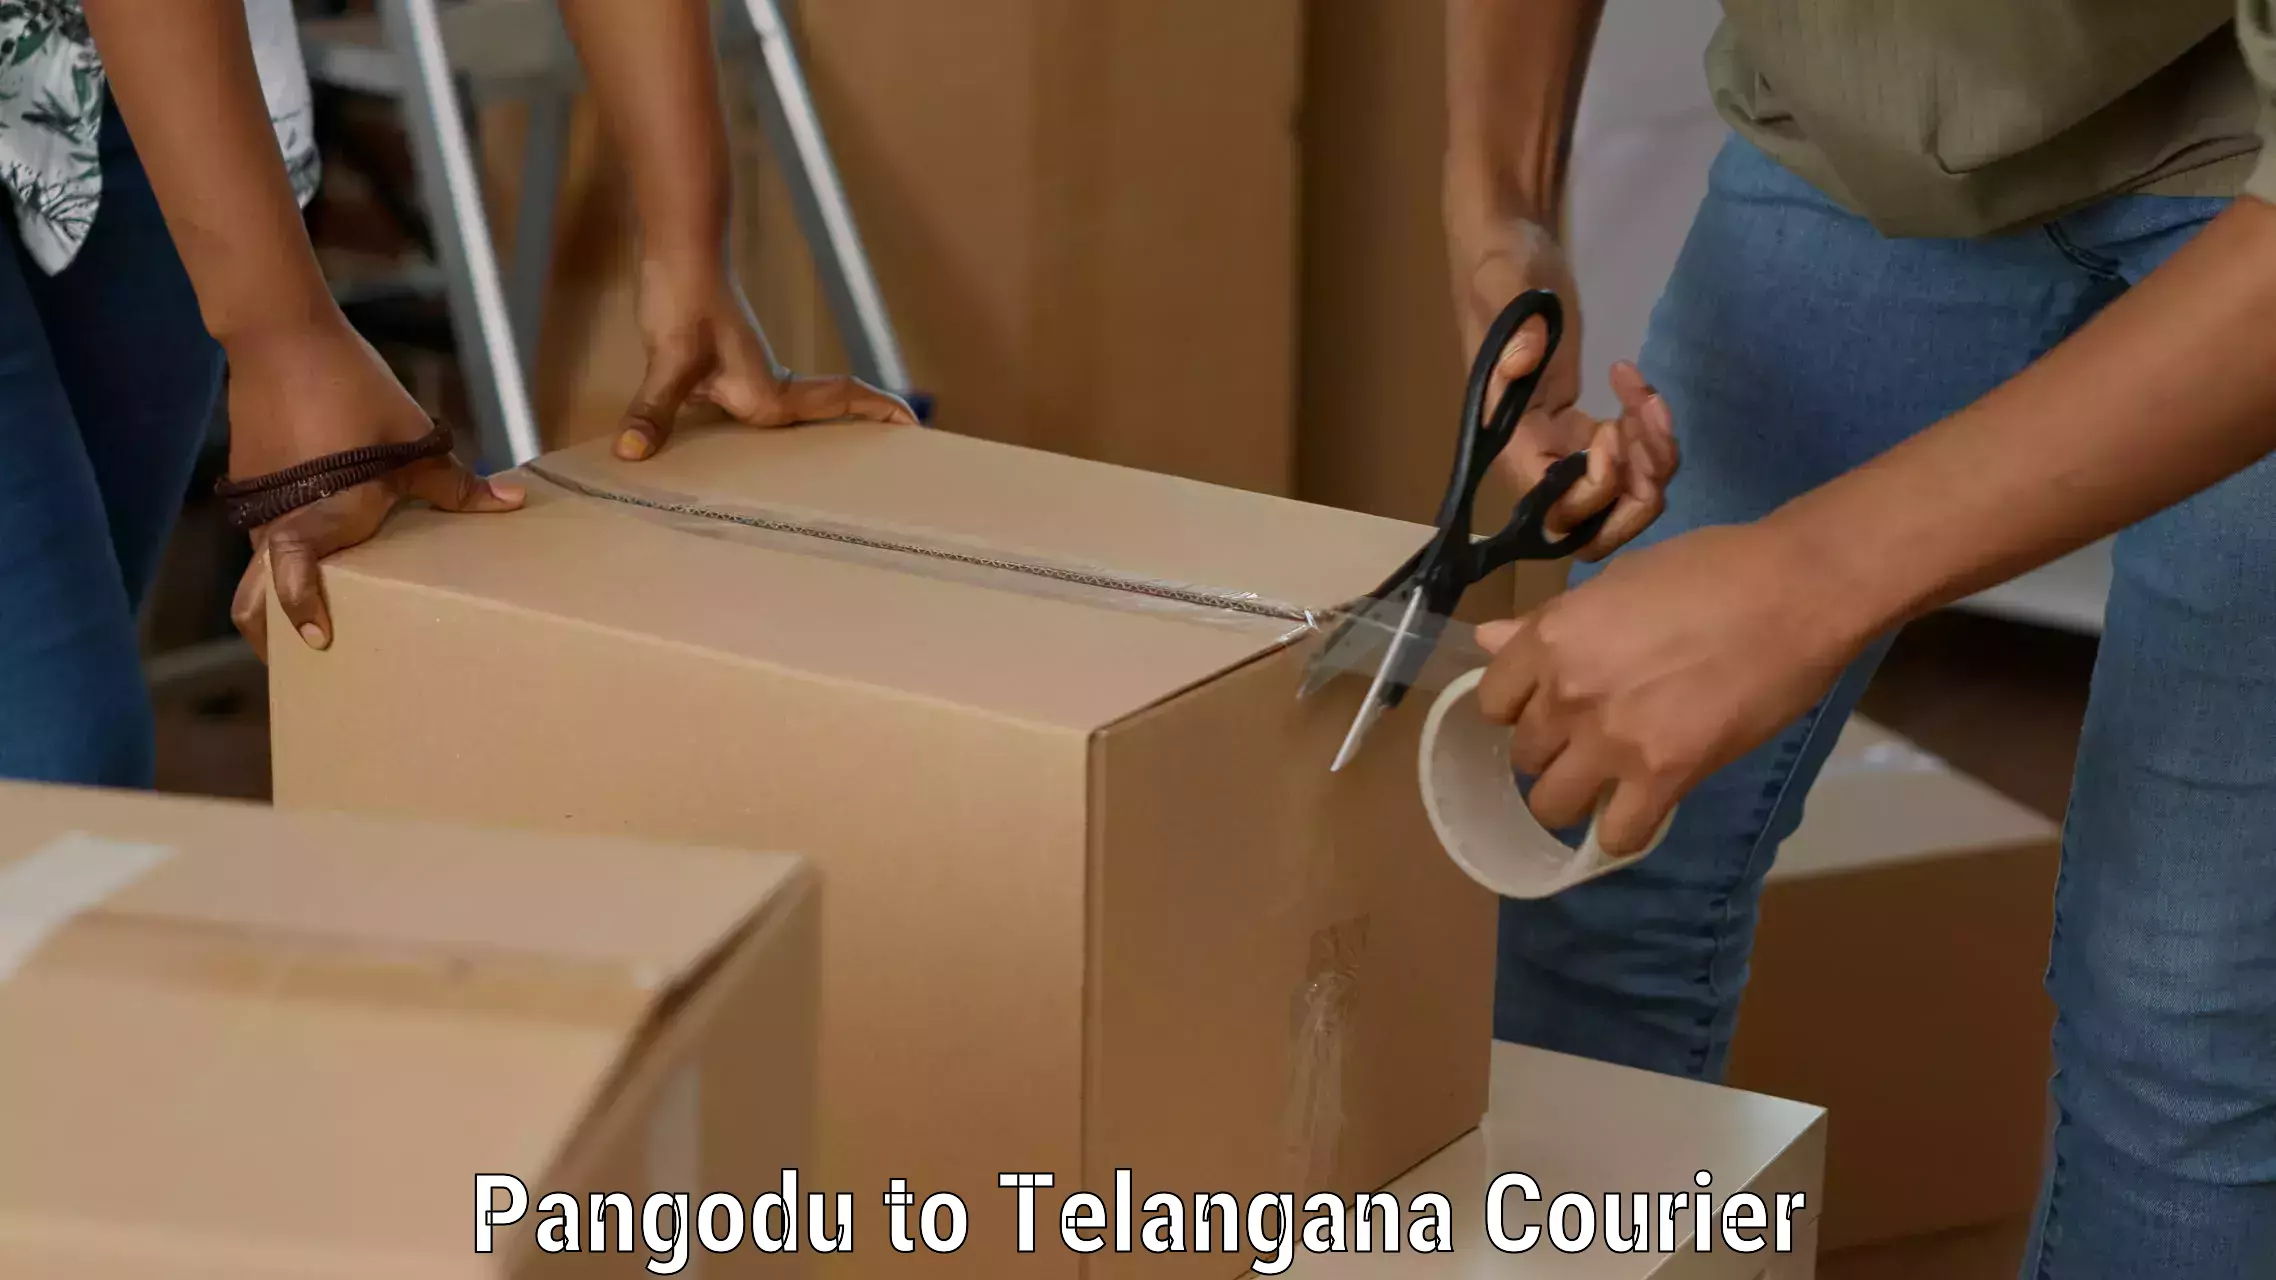 Nationwide shipping capabilities Pangodu to Tandur